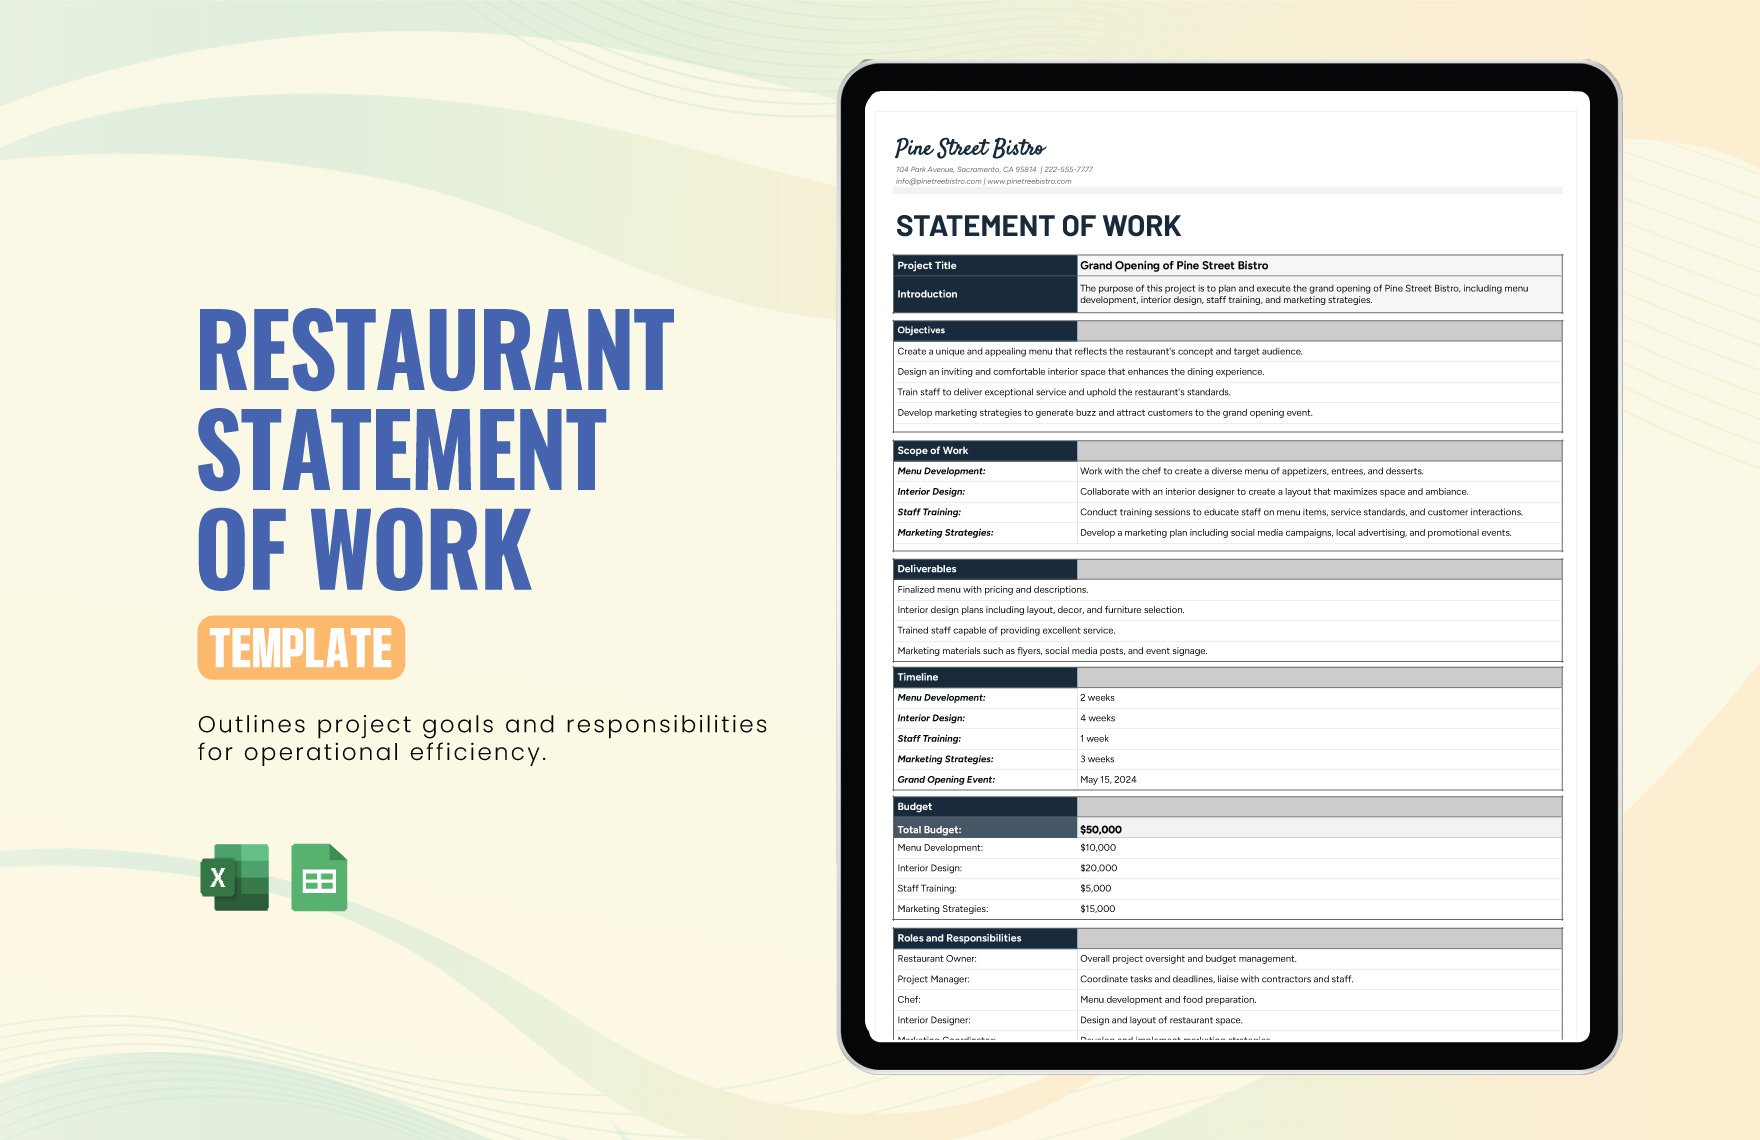 Restaurant Statement of Work Template